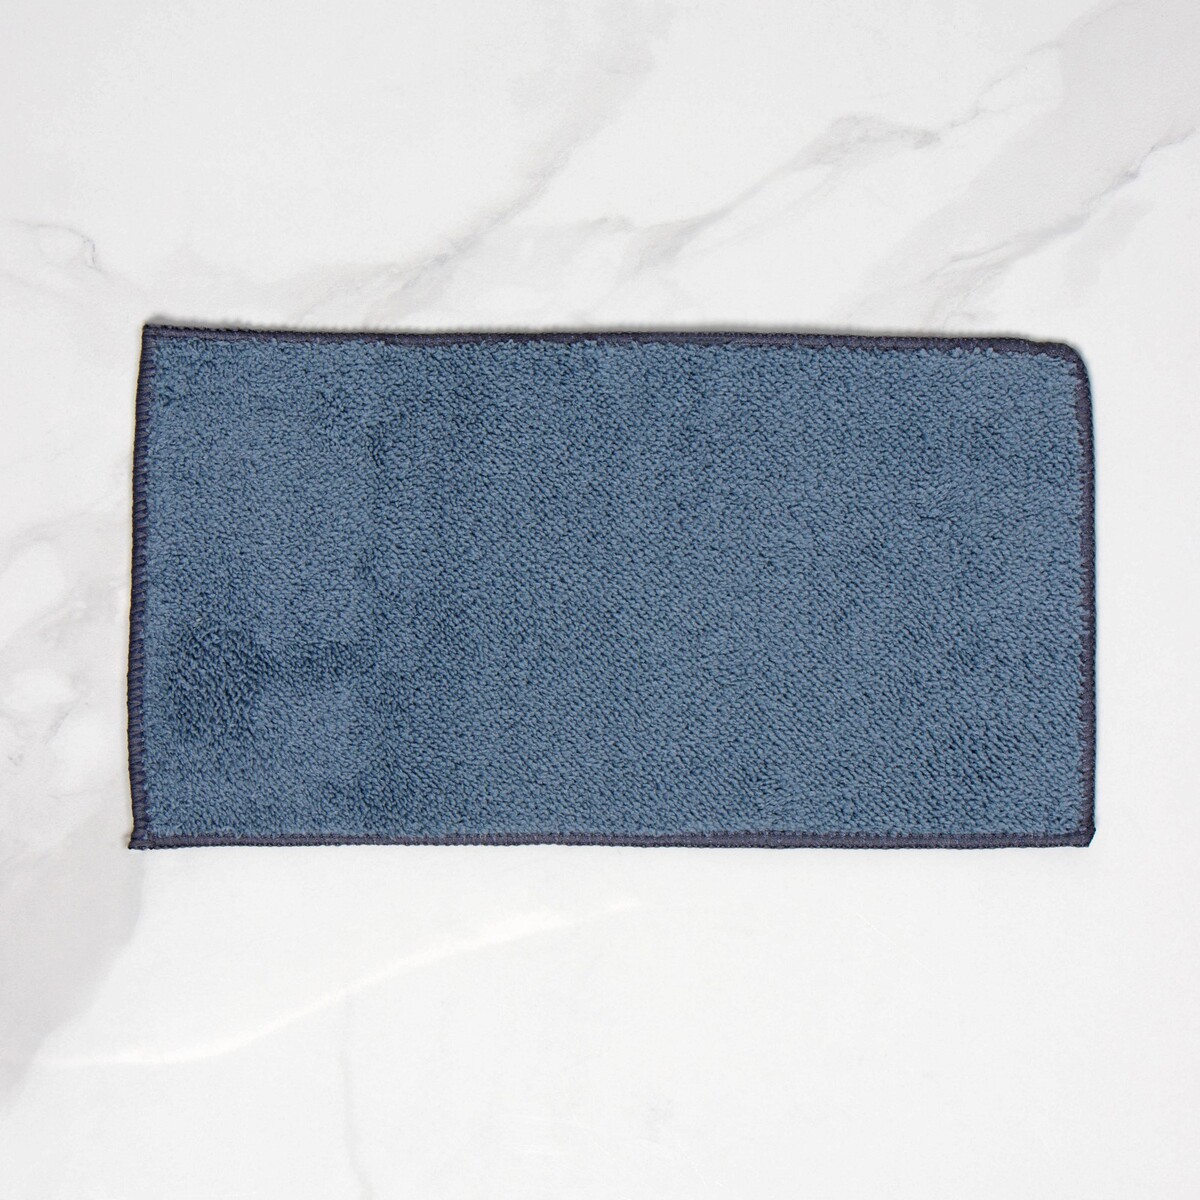 Насадка для окномойки raccoon, микрофибра, 27×7 см, цвет синий насадка для швабры с отжимом raccoon карманы с двух сторон микрофибра 39×12 см